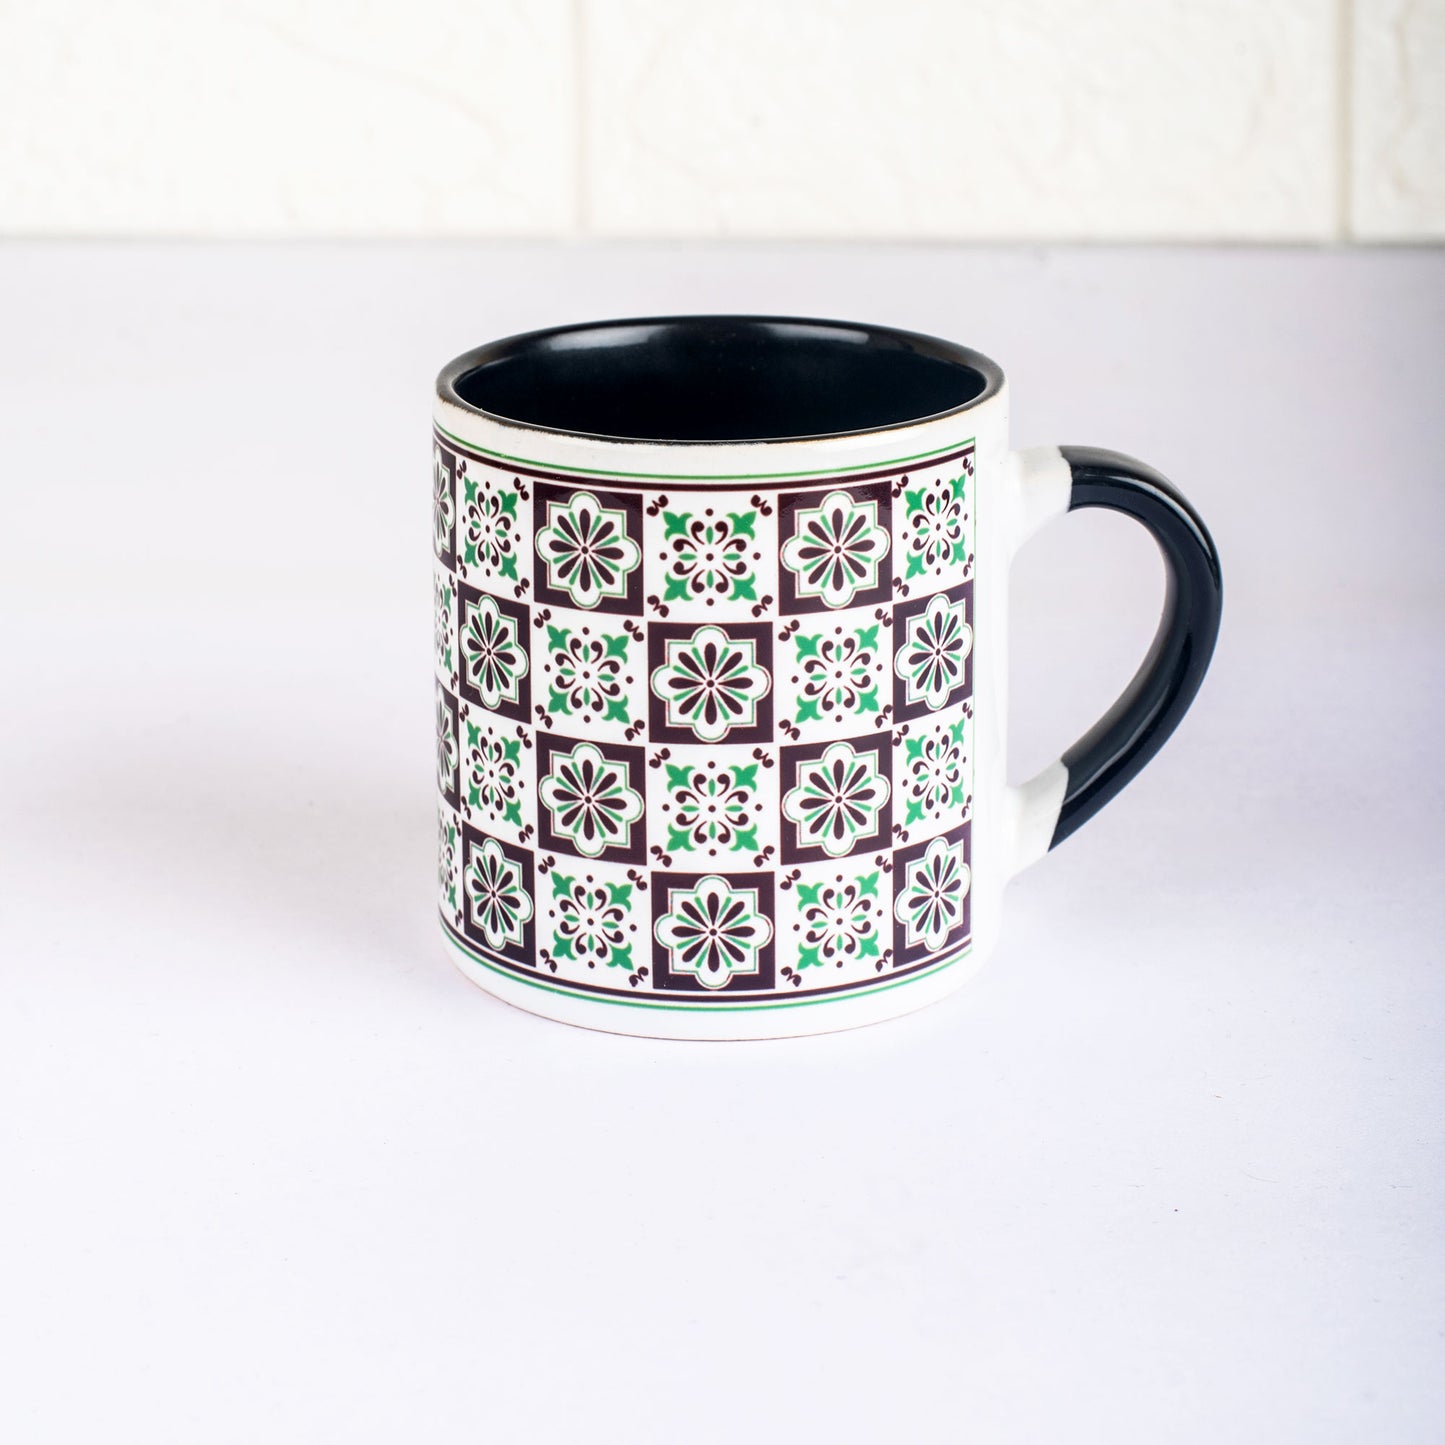 Vintage Tile Pattern Ceramic Tea cups - Set of 4 - Black and Green